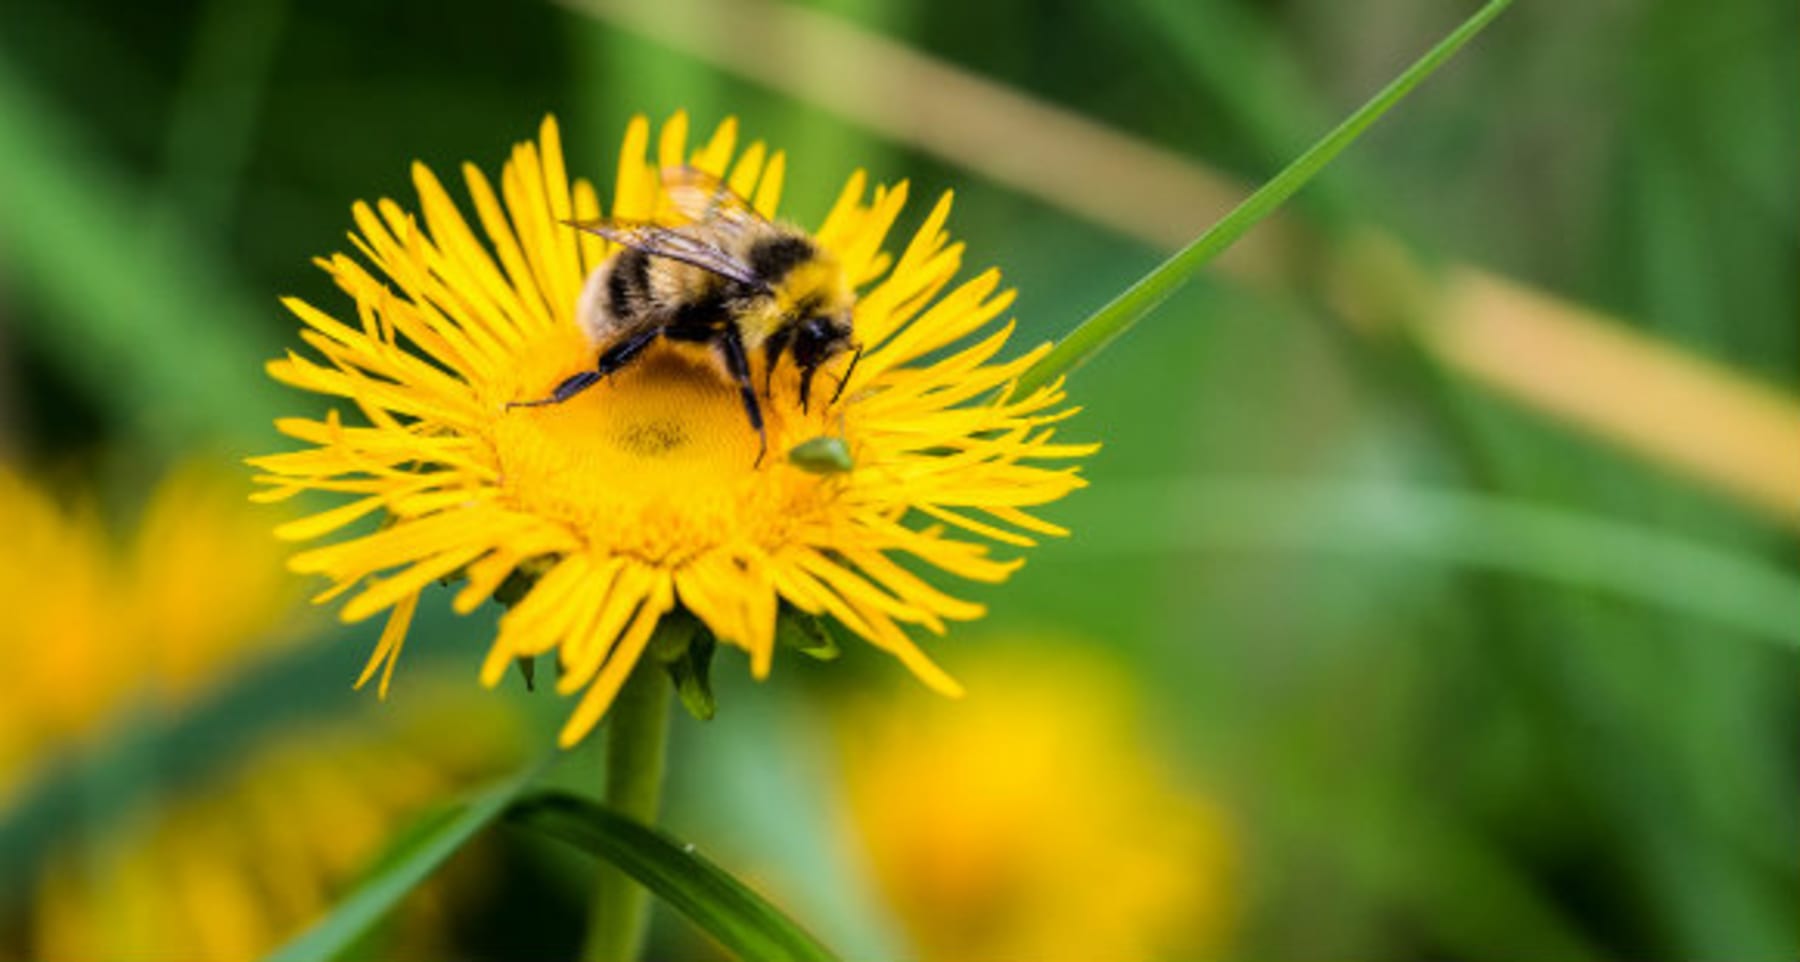 Pyłek pszczeli | Korzyści, opinie, zastosowanie | Miód | Naturalne słodziki